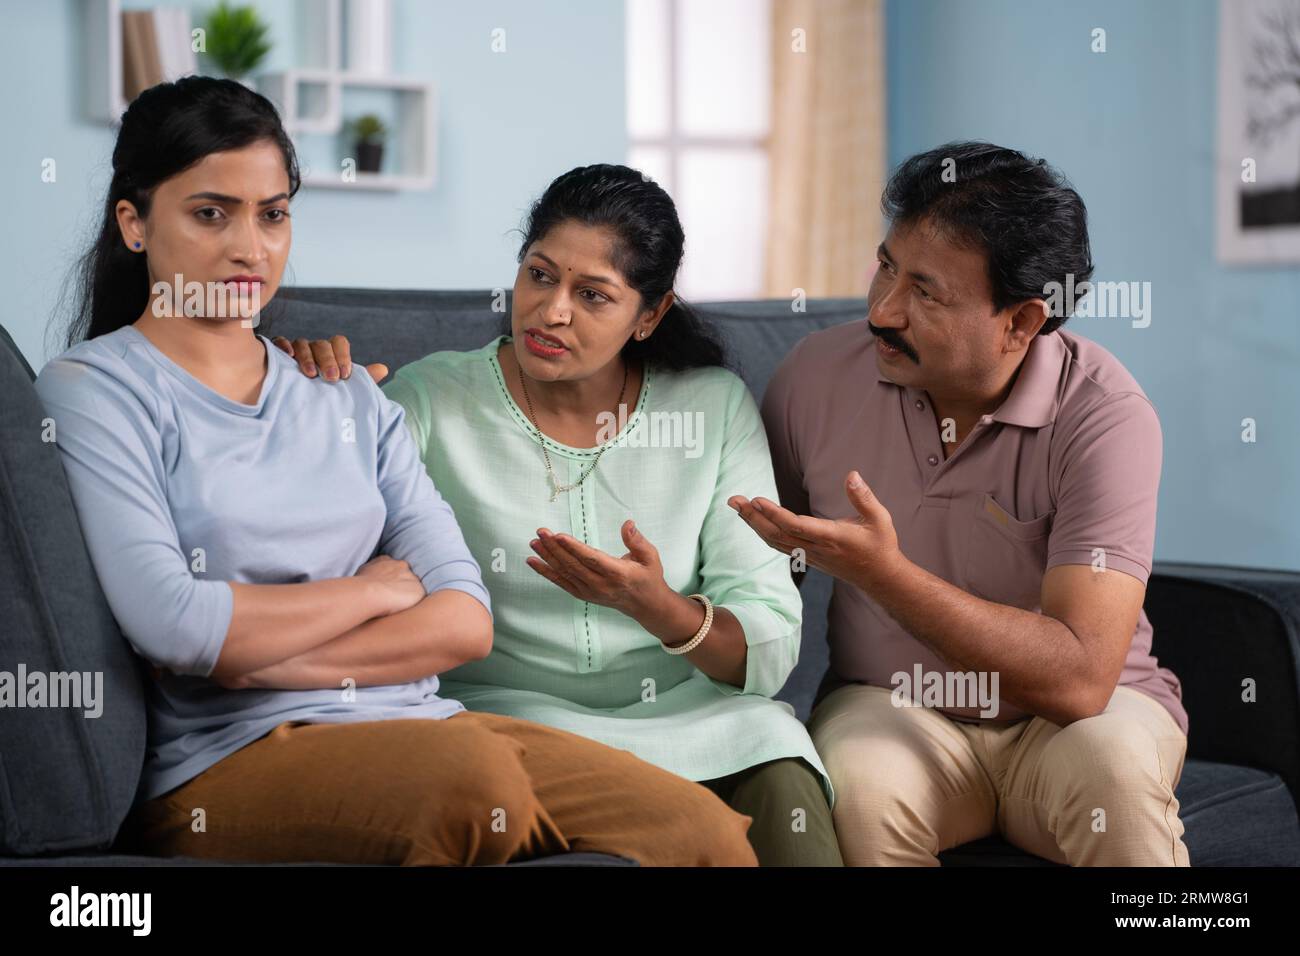 Konzentrieren Sie sich auf Eltern, indische Eltern, die nach einem Streit traurige oder wütende Tochter trösten, während sie zu Hause auf dem Sofa sitzen - Konzept der familiären Bindung, emotional Stockfoto